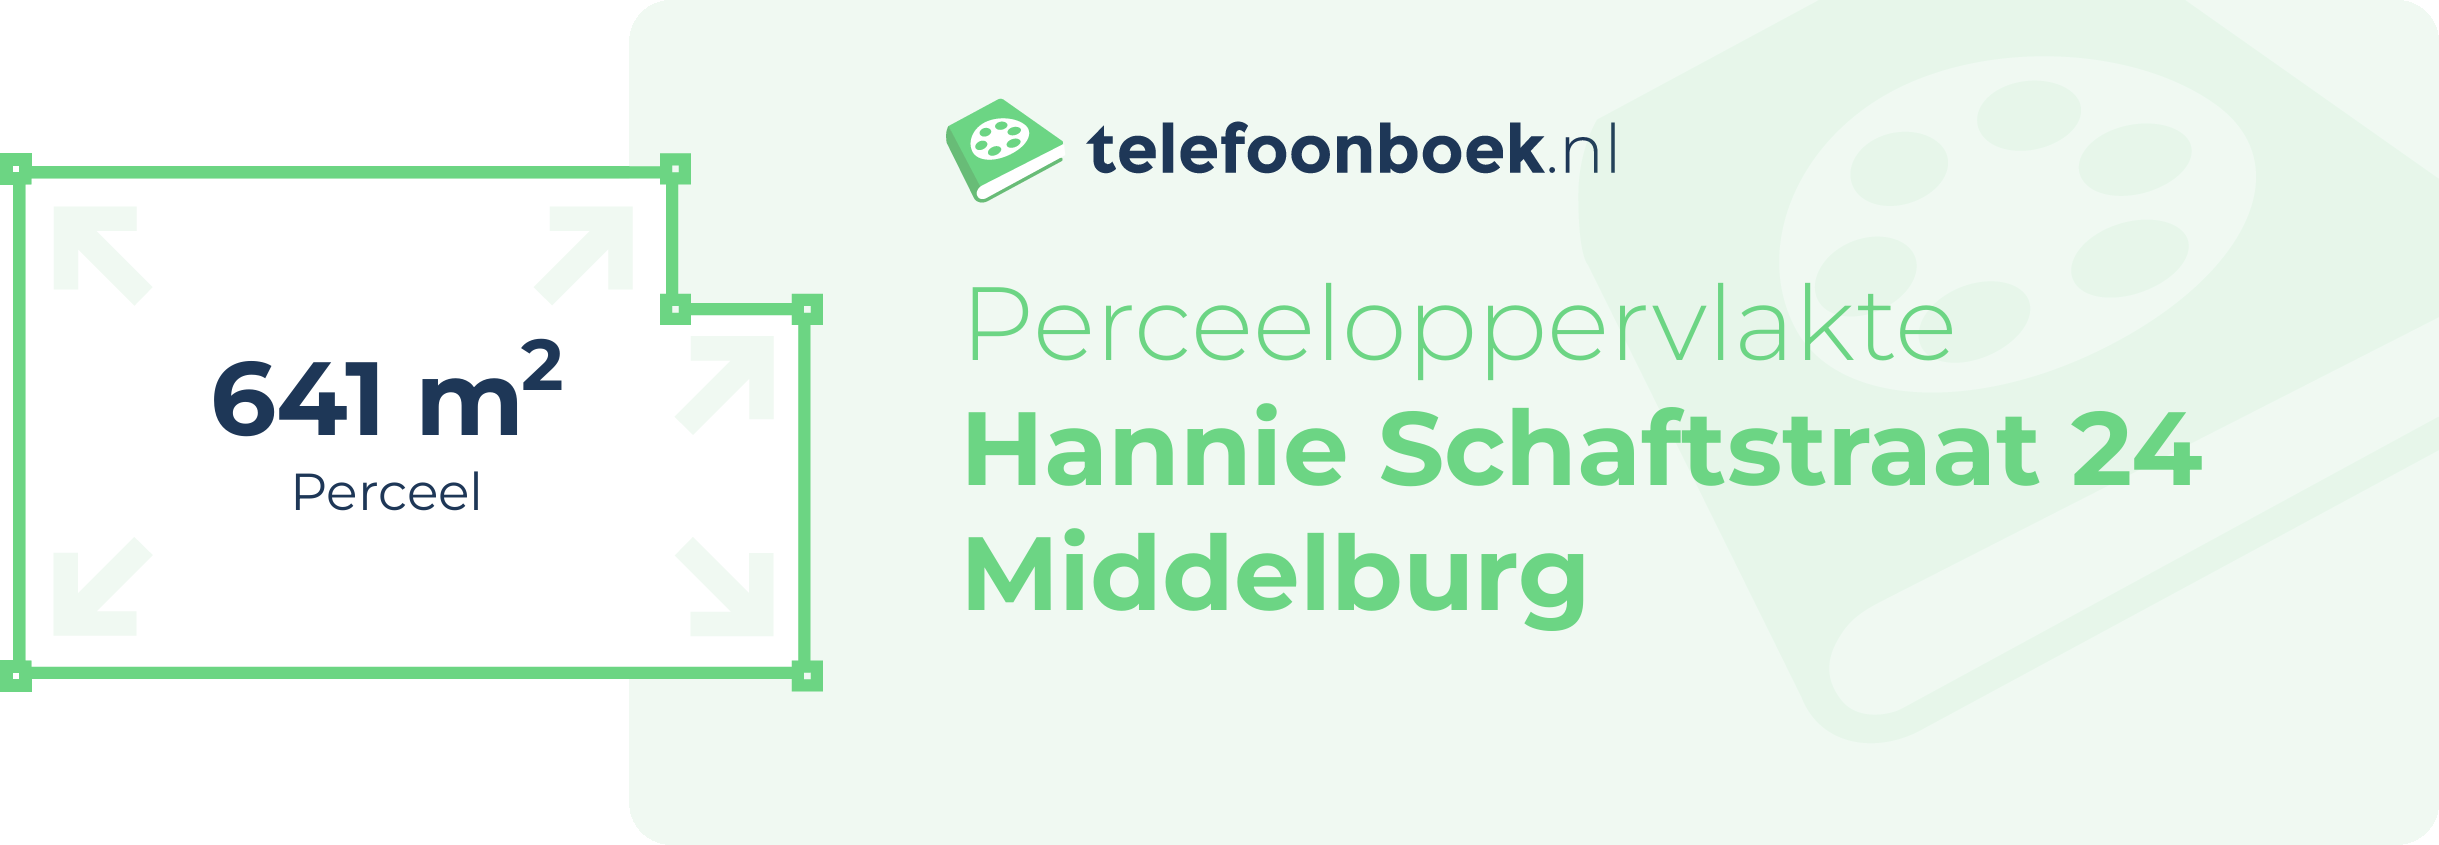 Perceeloppervlakte Hannie Schaftstraat 24 Middelburg